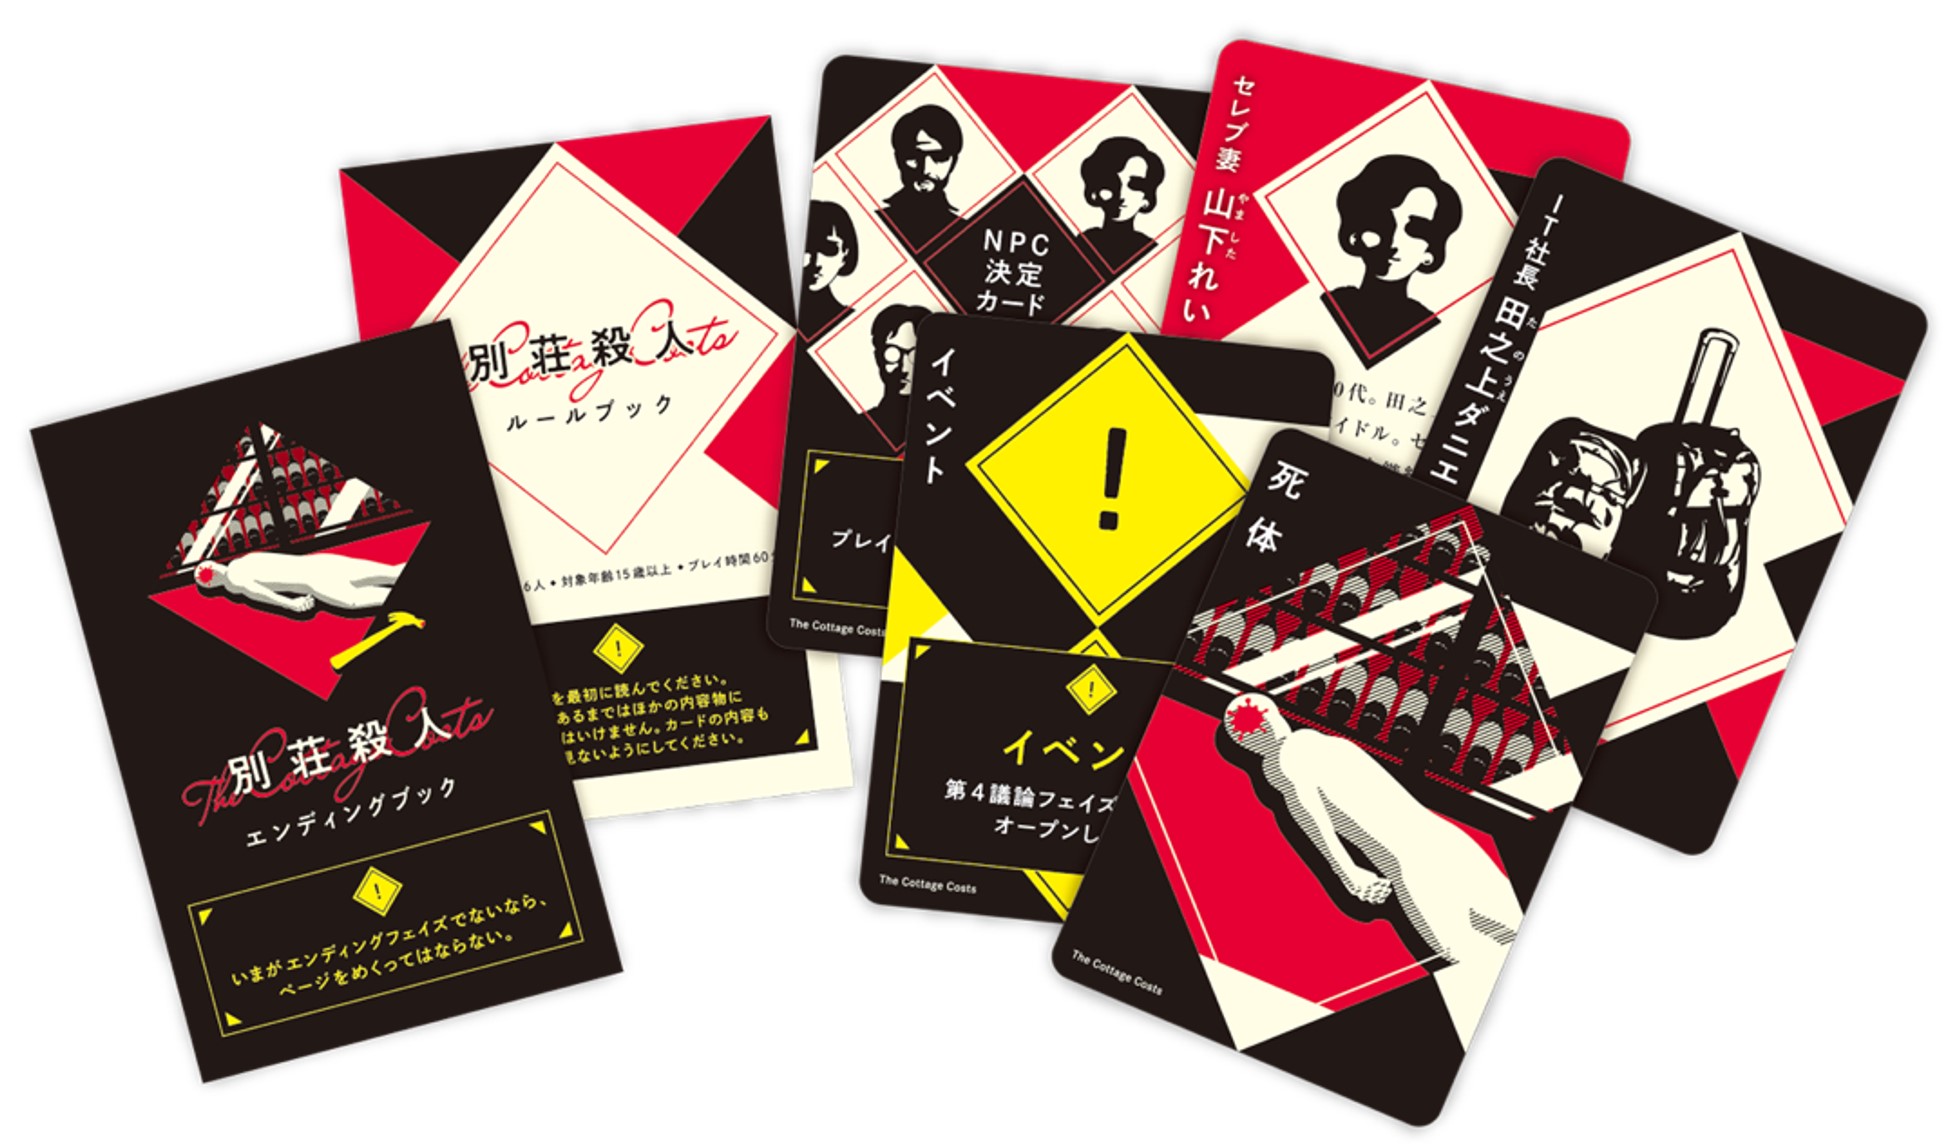 「マーダーミステリーミニ」第9弾『別荘殺人』2月17日発売 – Table Games in the World